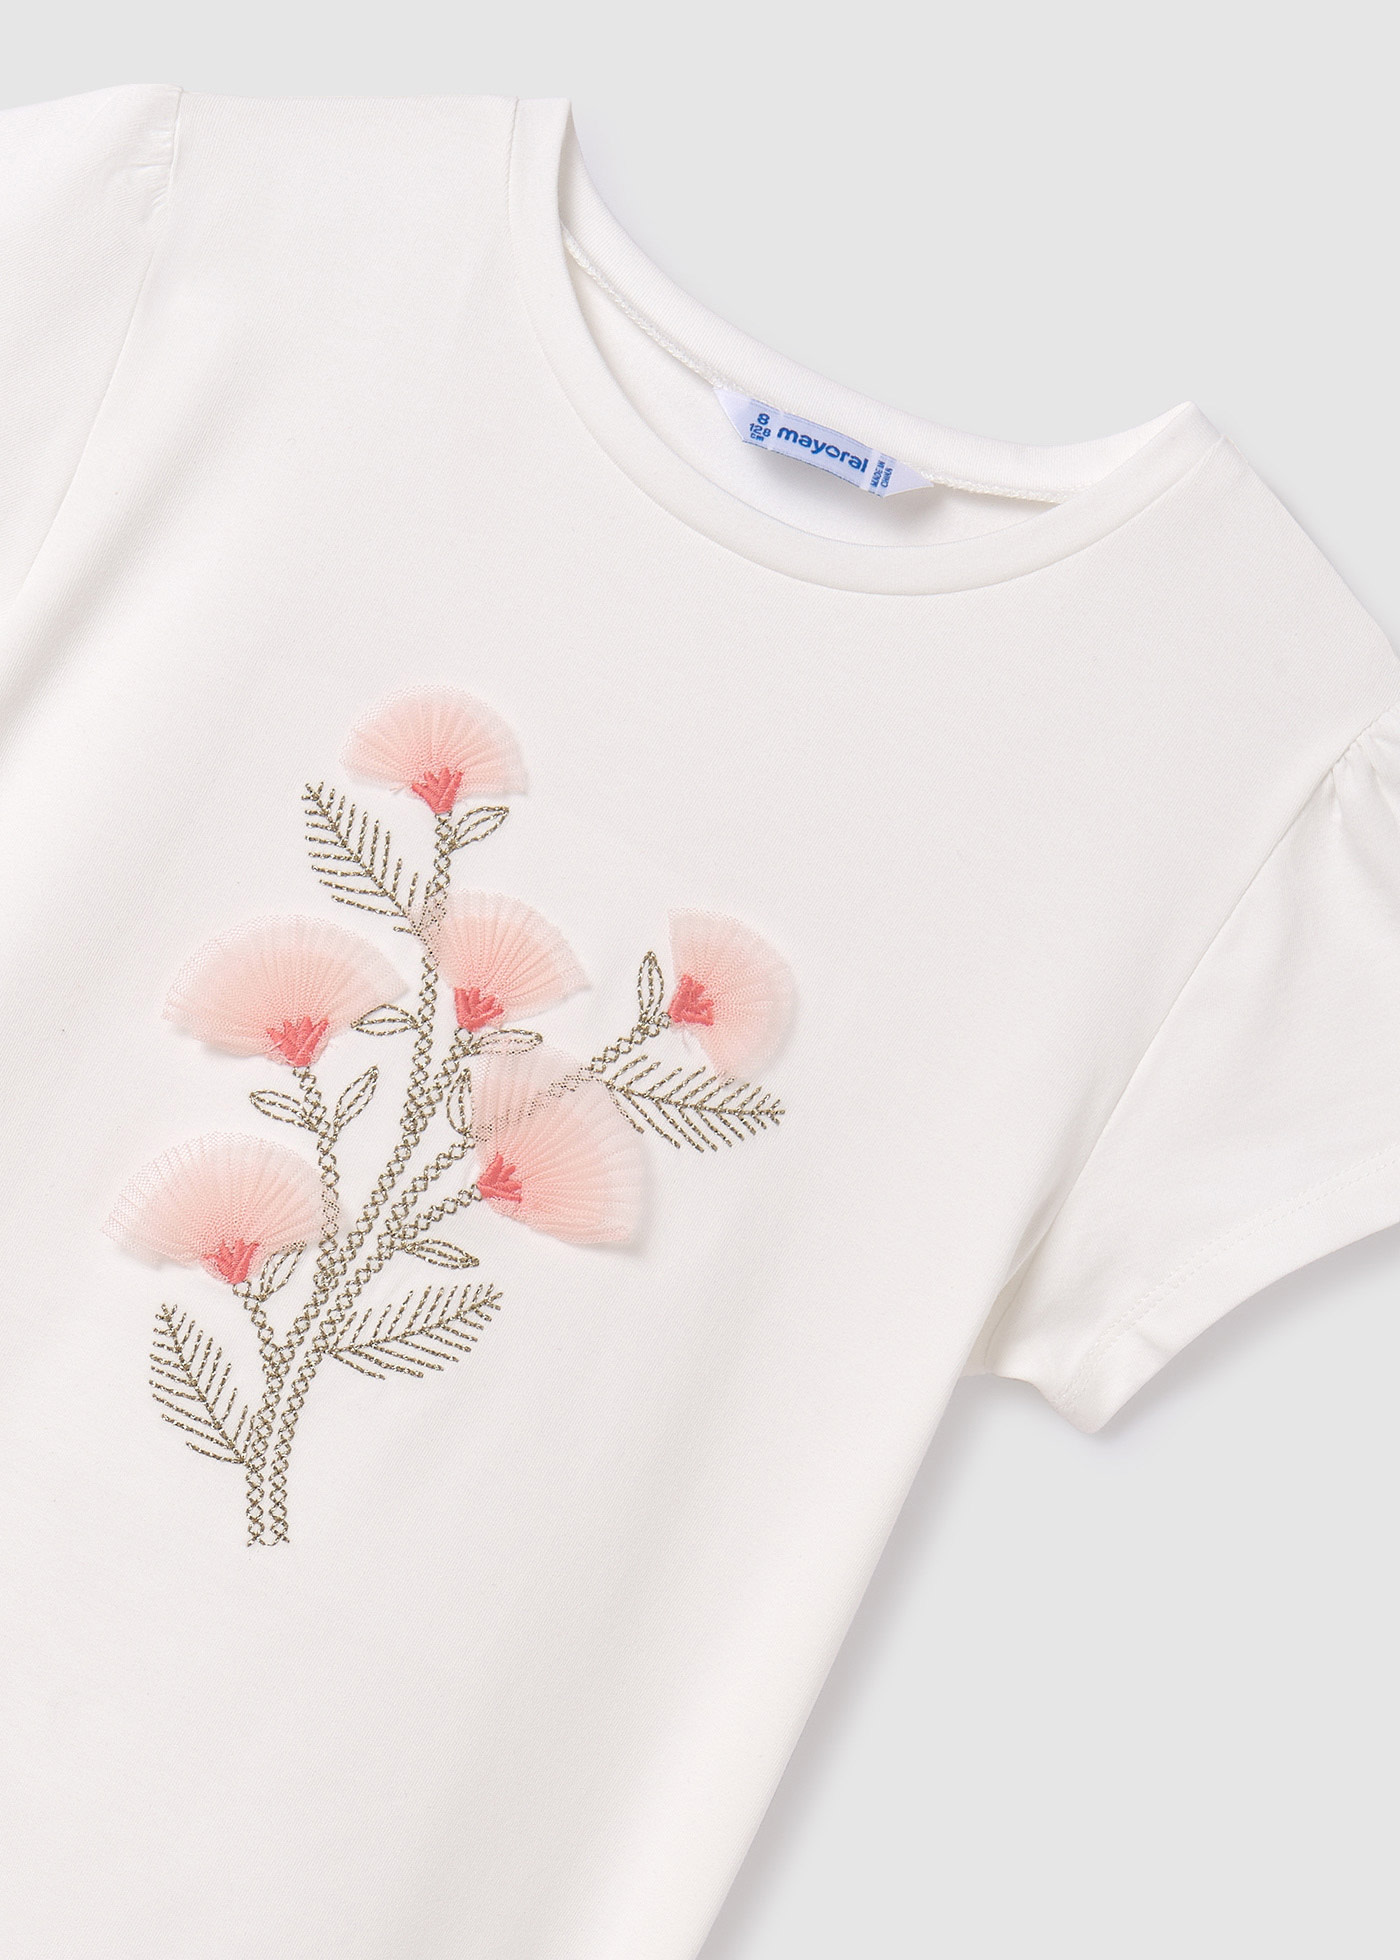 T-Shirt bestickte Blumen Teenager Mädchen